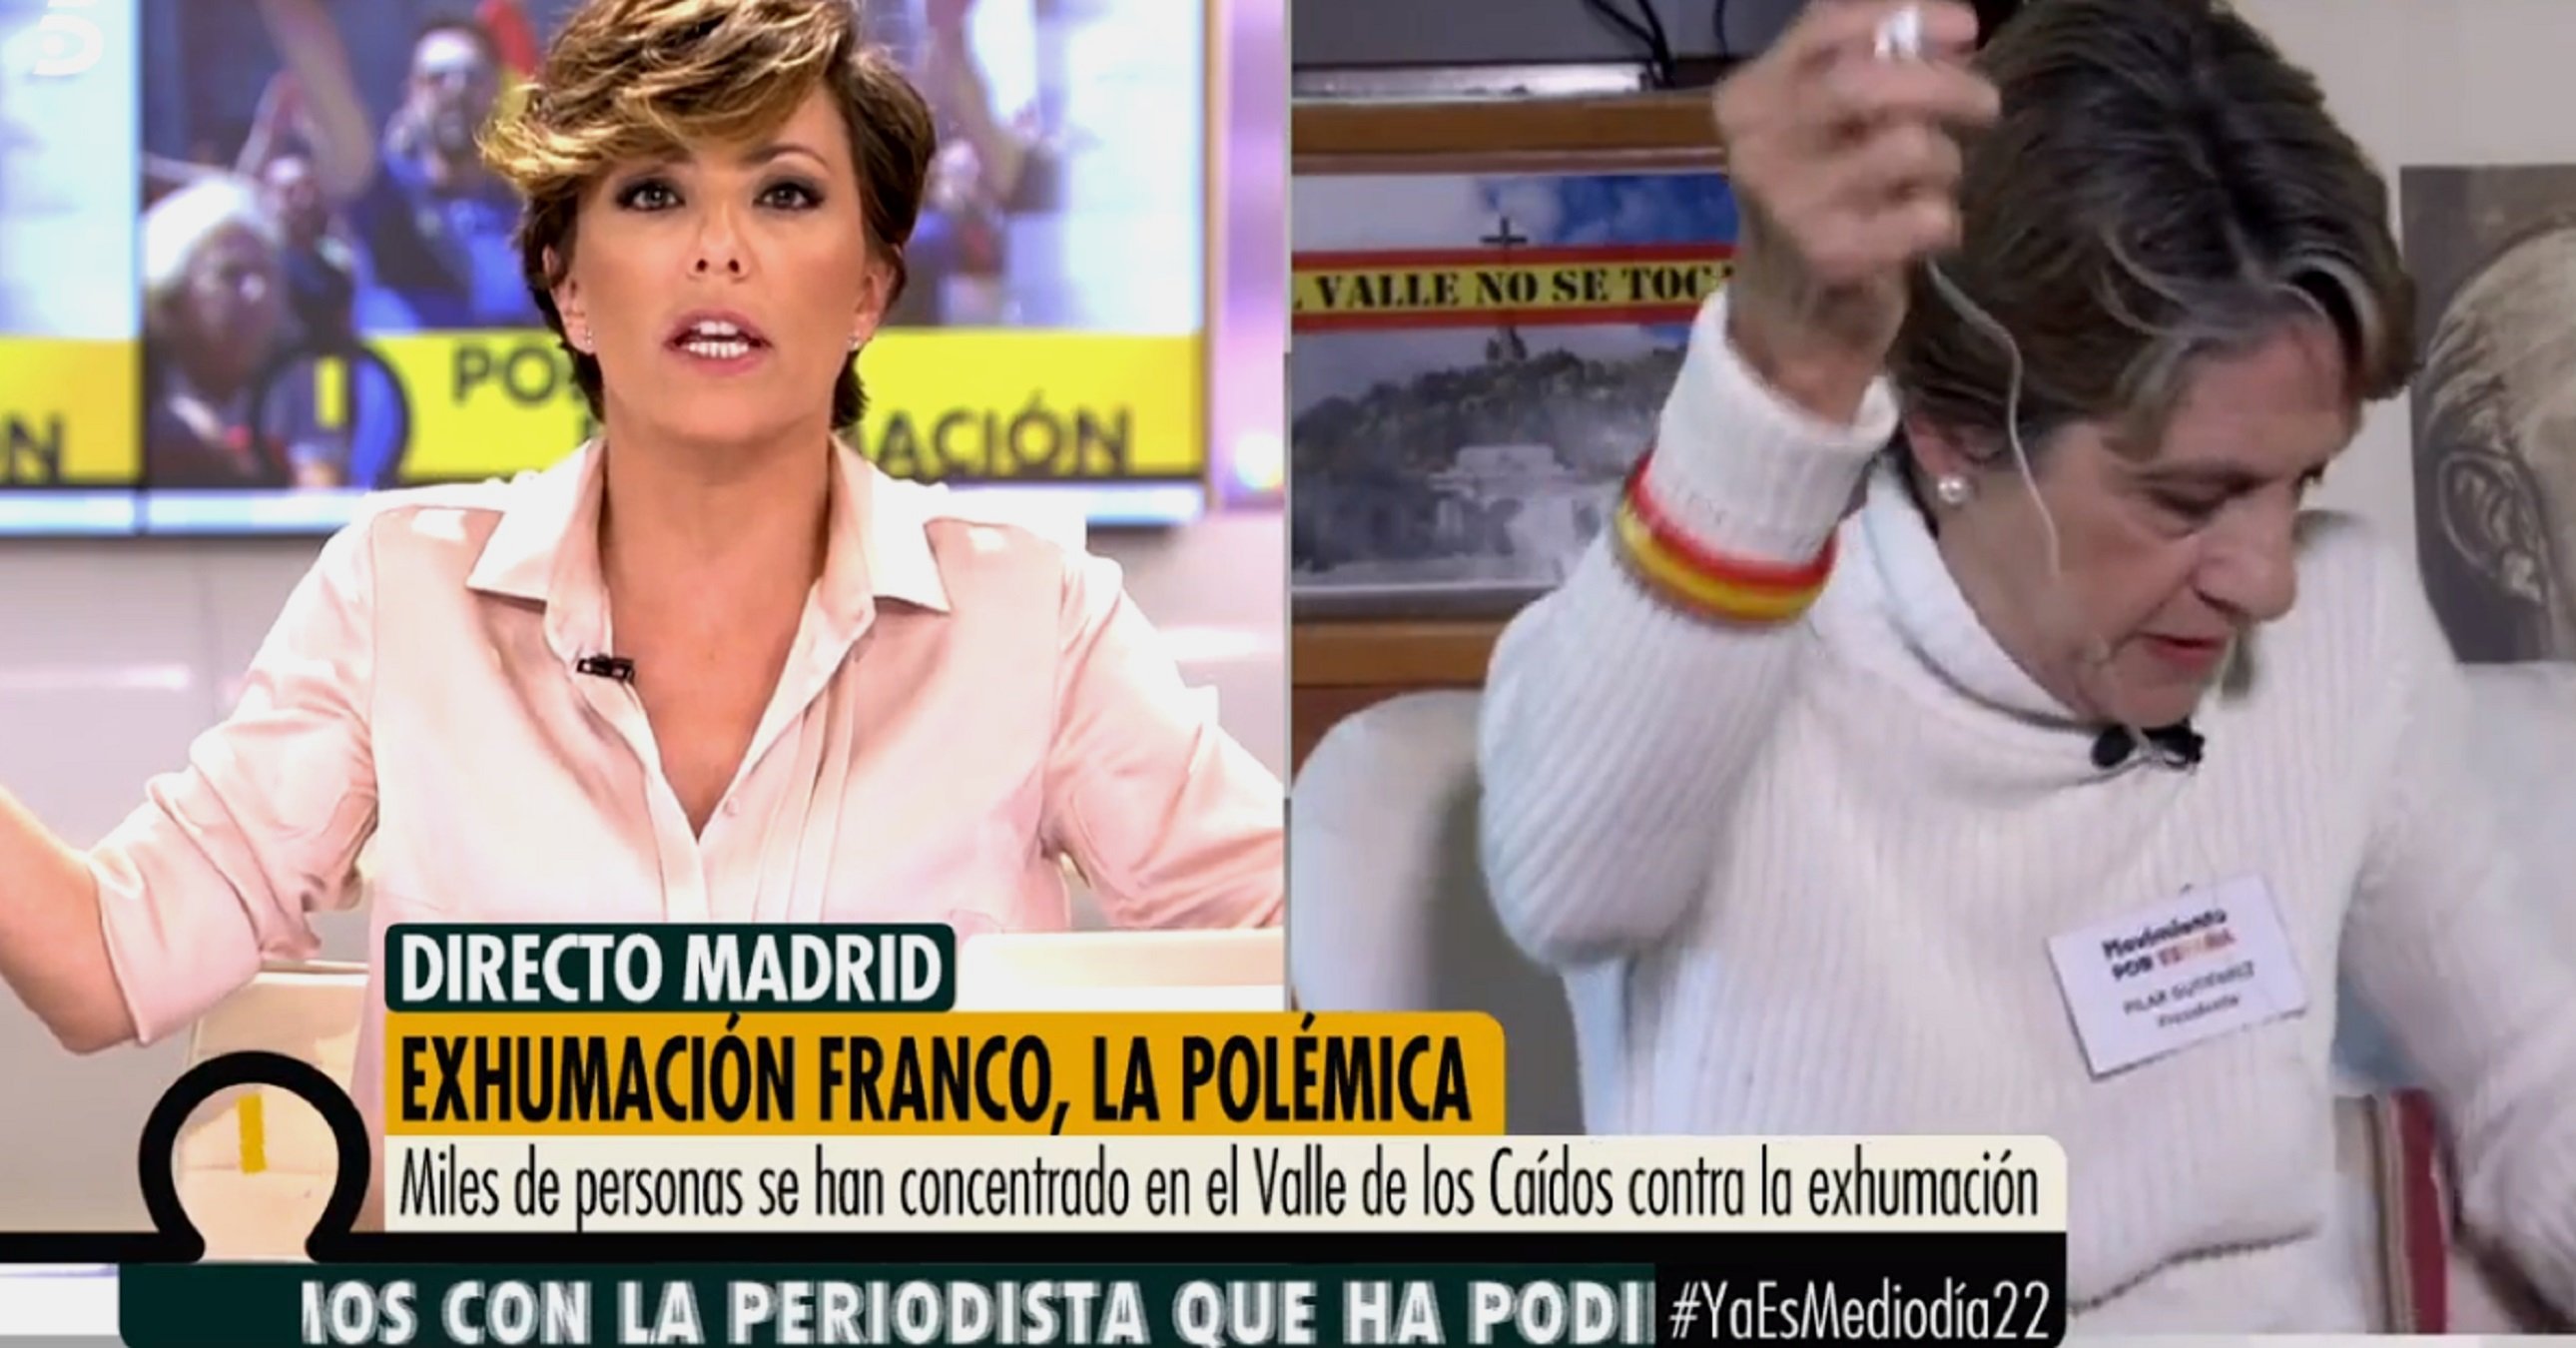 Una líder de ultraderecha se va en directo de Telecinco: "Sois frikis y mentís"